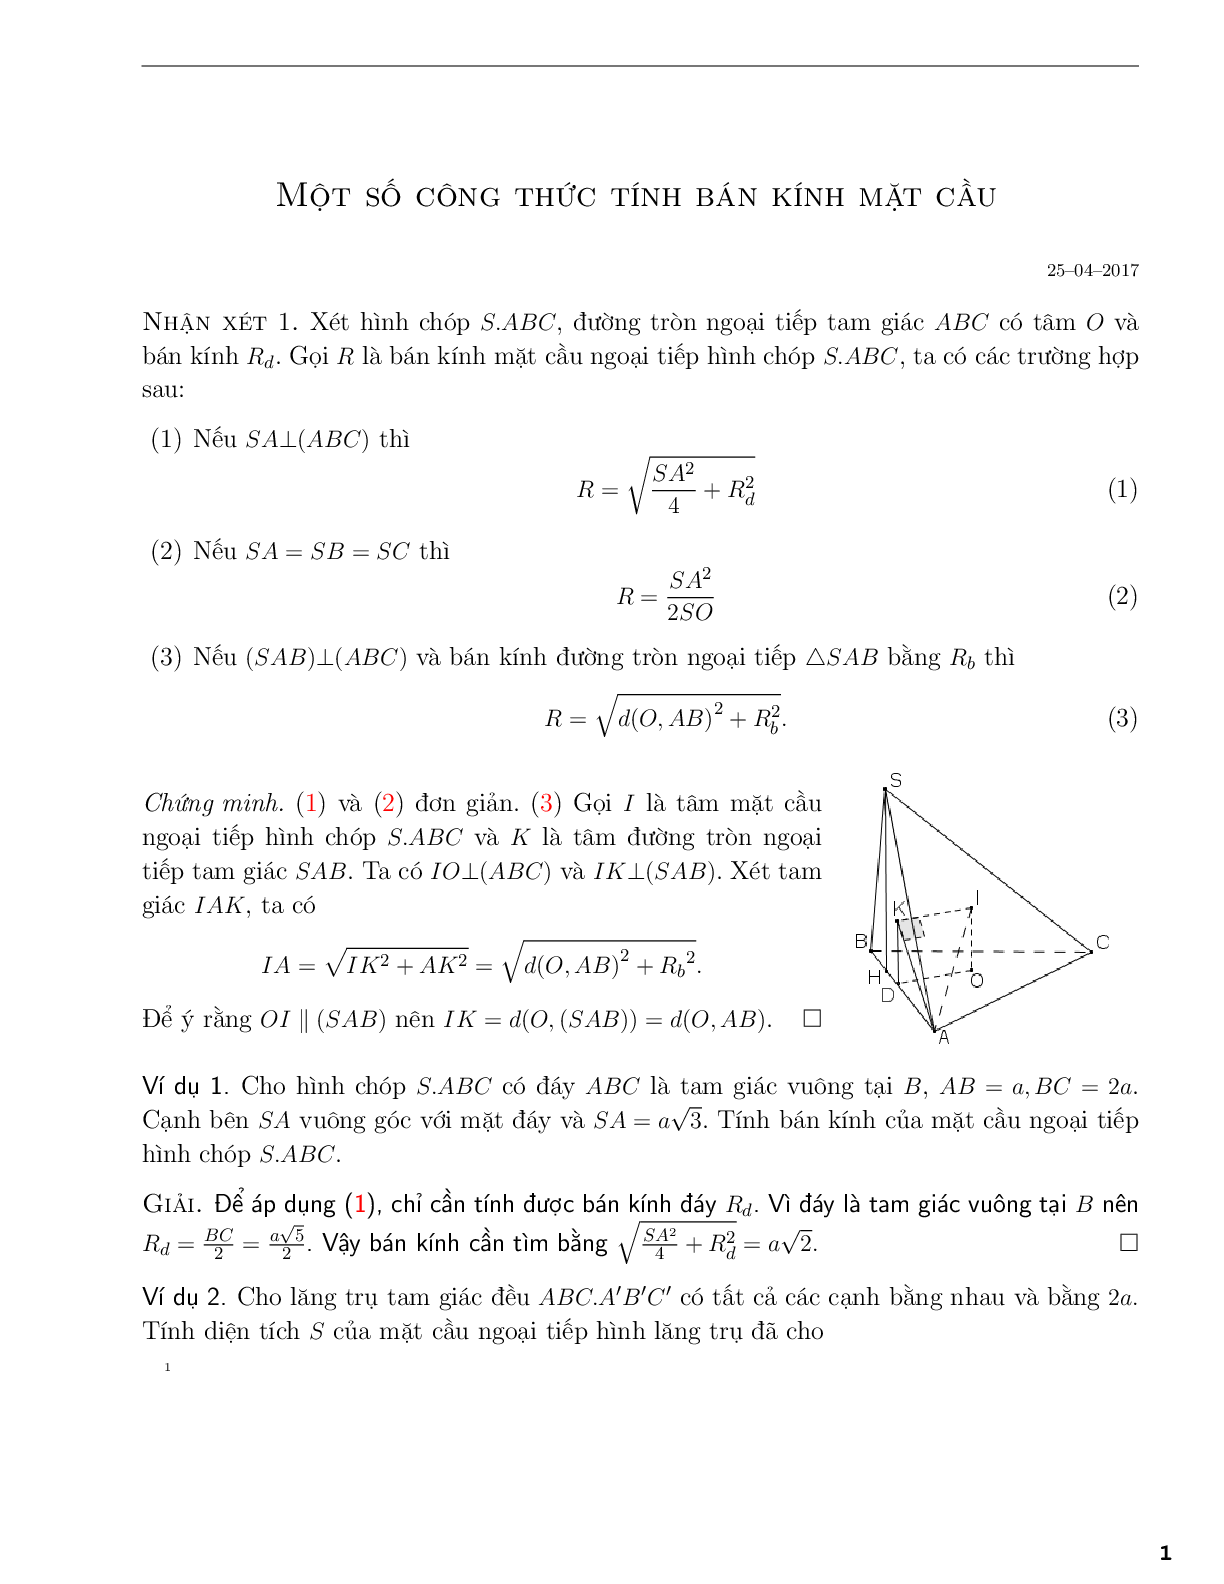 Một số công thức tính bán kính mặt cầu (trang 1)